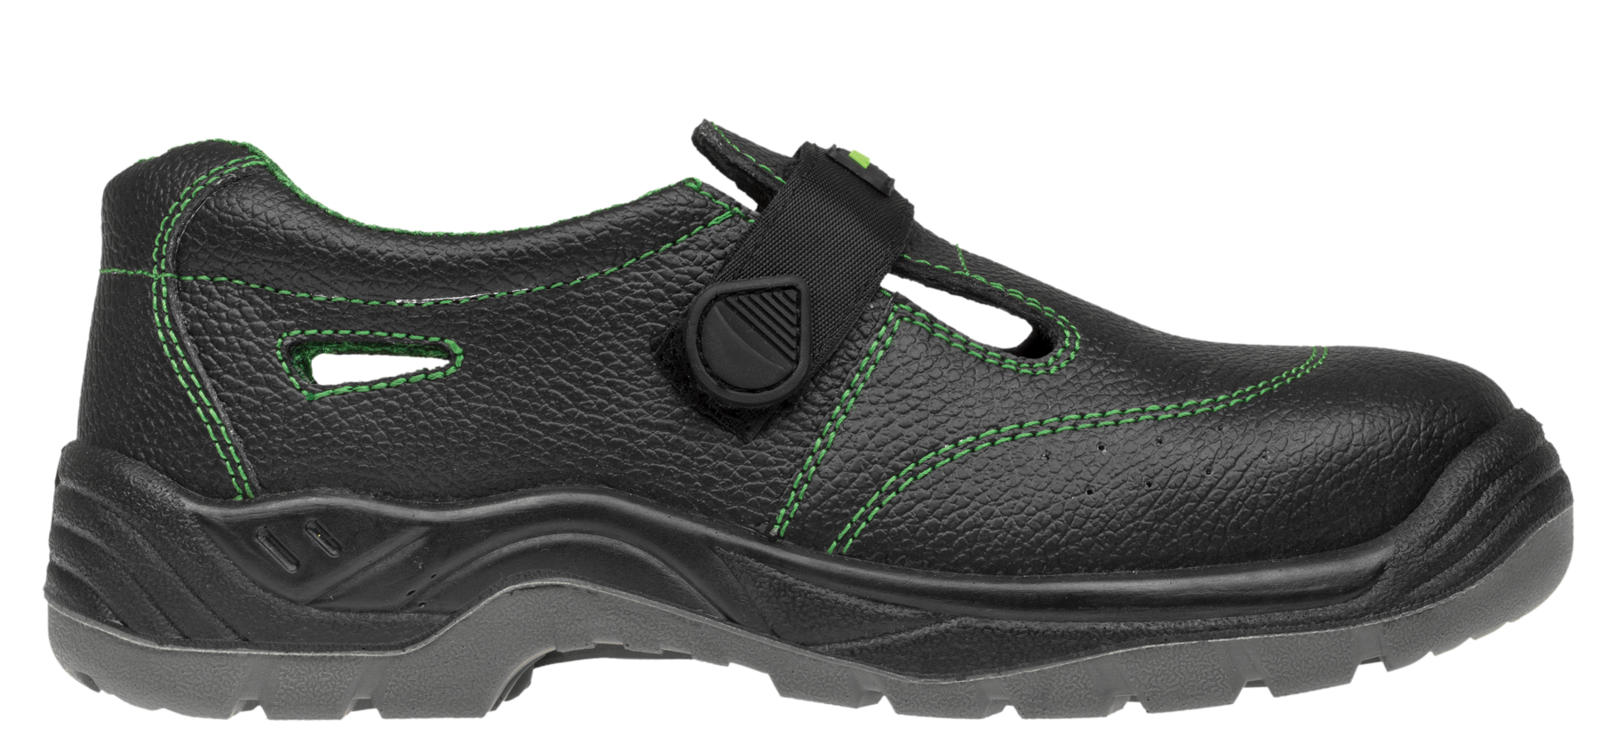 Bezpečnostné sandále Adamant Classic S1 - veľkosť: 44, farba: čierna